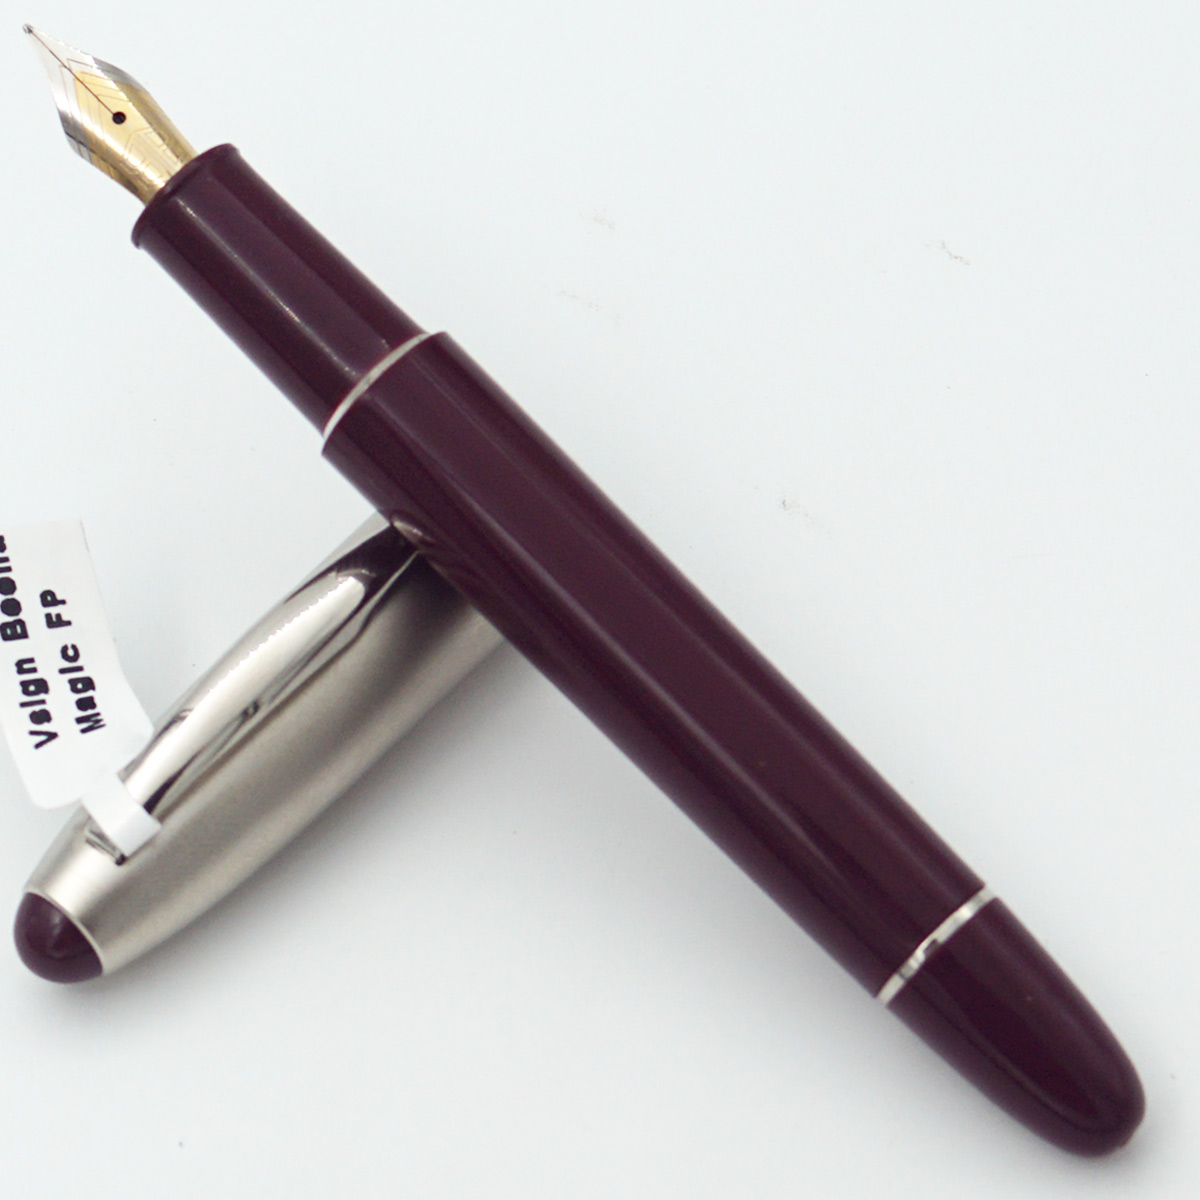 Vsign Beena Magic Maroon Color Body With Silver Clip Fine Nib Converter Type Fountain Pen SKU 24462